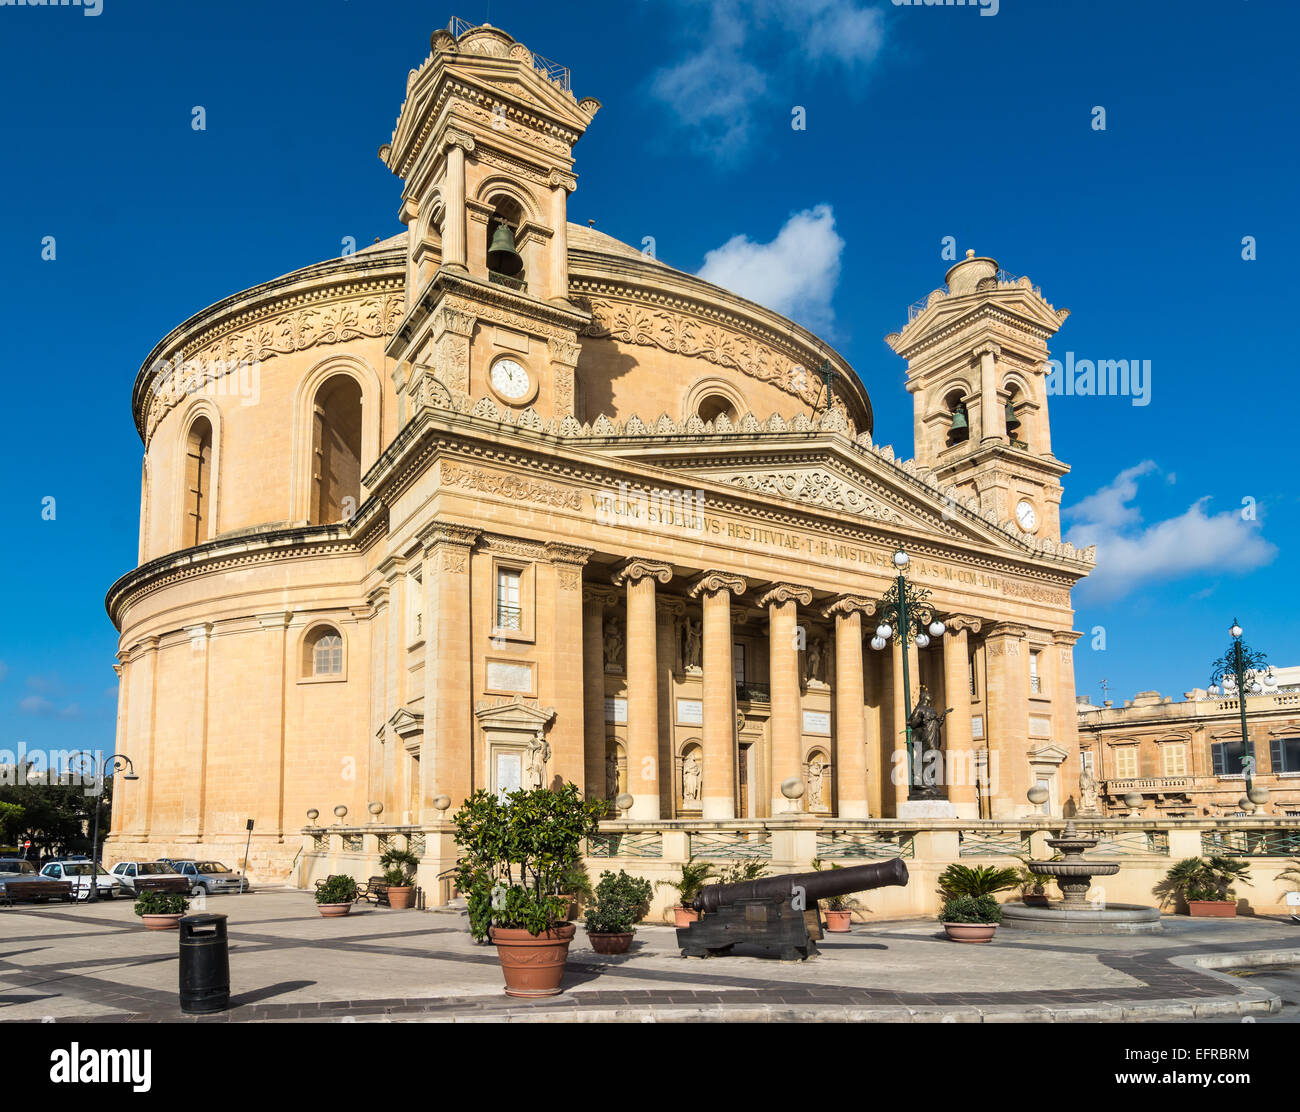 La célèbre église St Mary's à London à Malte qu'on appelle parfois la rotonde de Mosta ou le dôme de Mosta. C'est la troisième plus grande Banque D'Images